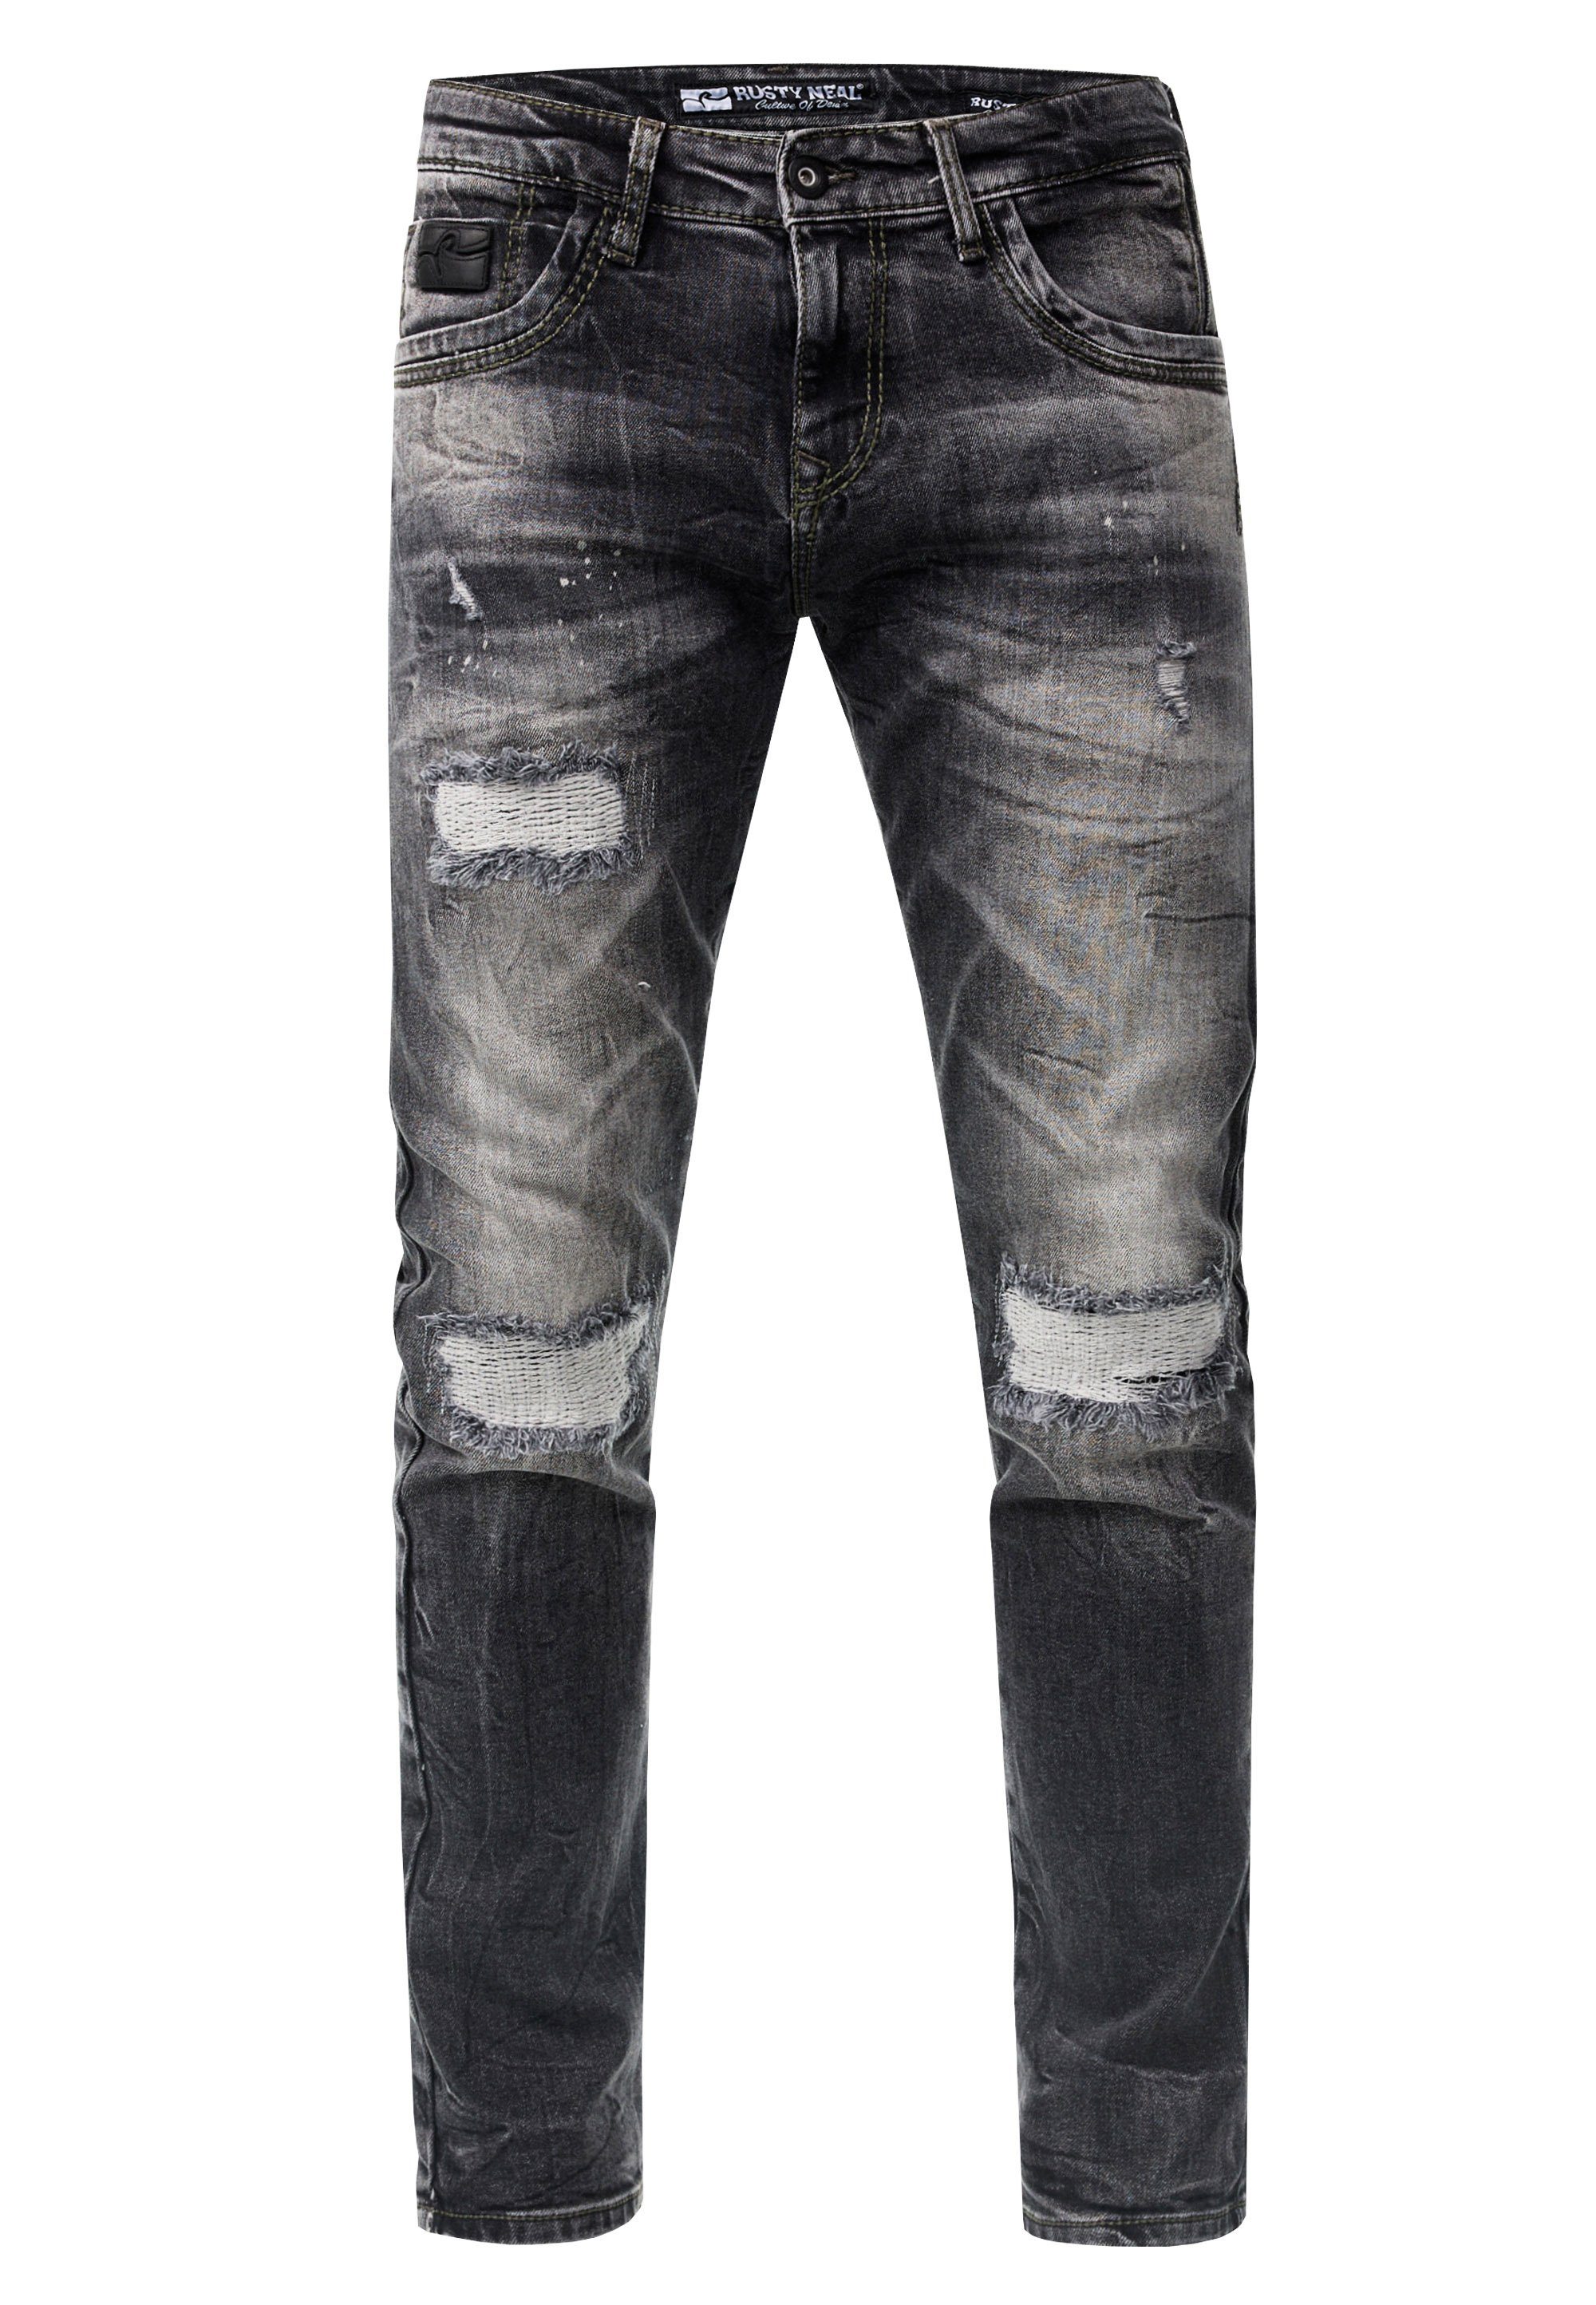 Rusty Neal Straight-Jeans dunkelgrau Nähten farblich YAMATO mit abgesetzten